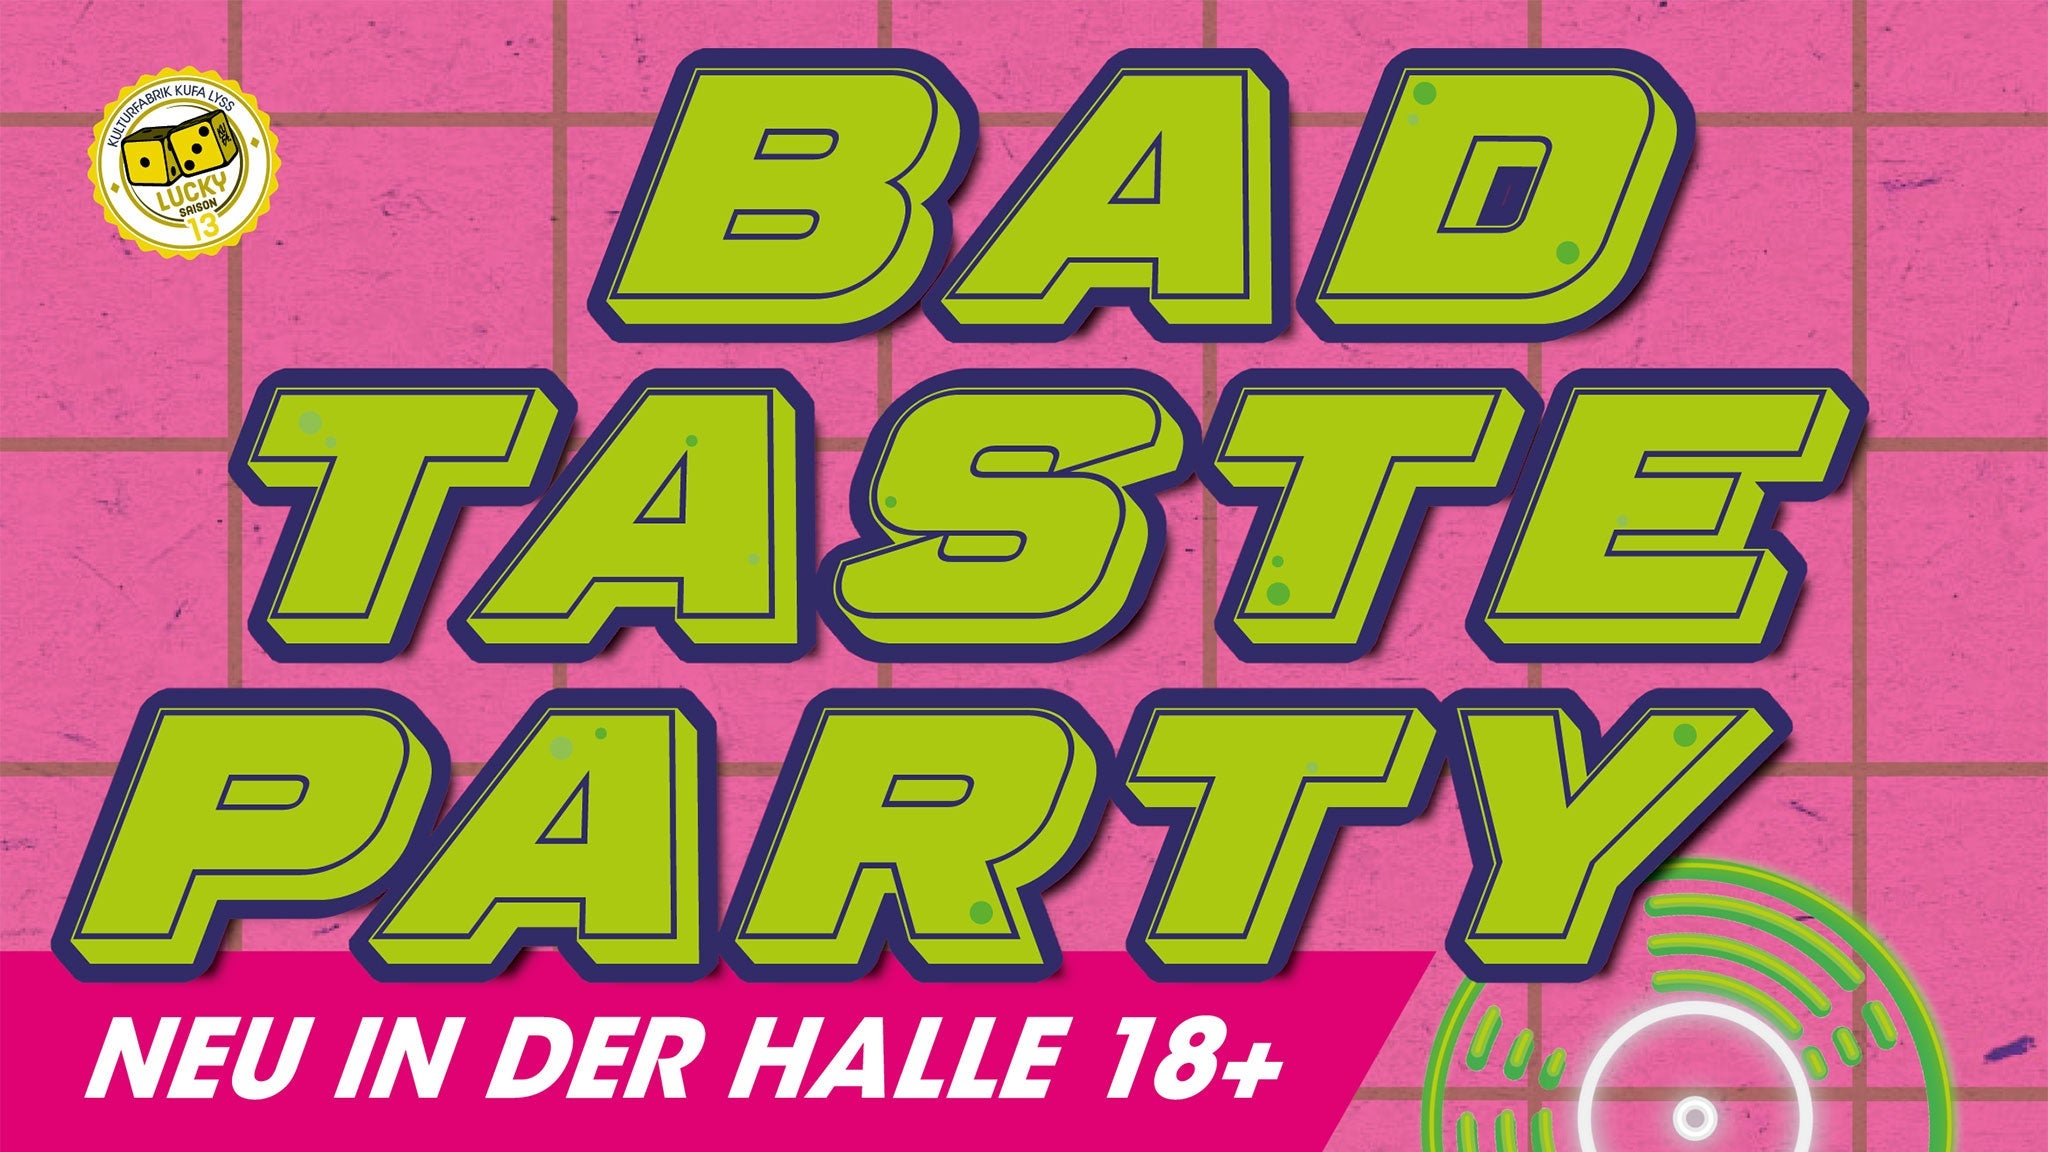 BAD TASTE Party presale information on freepresalepasswords.com